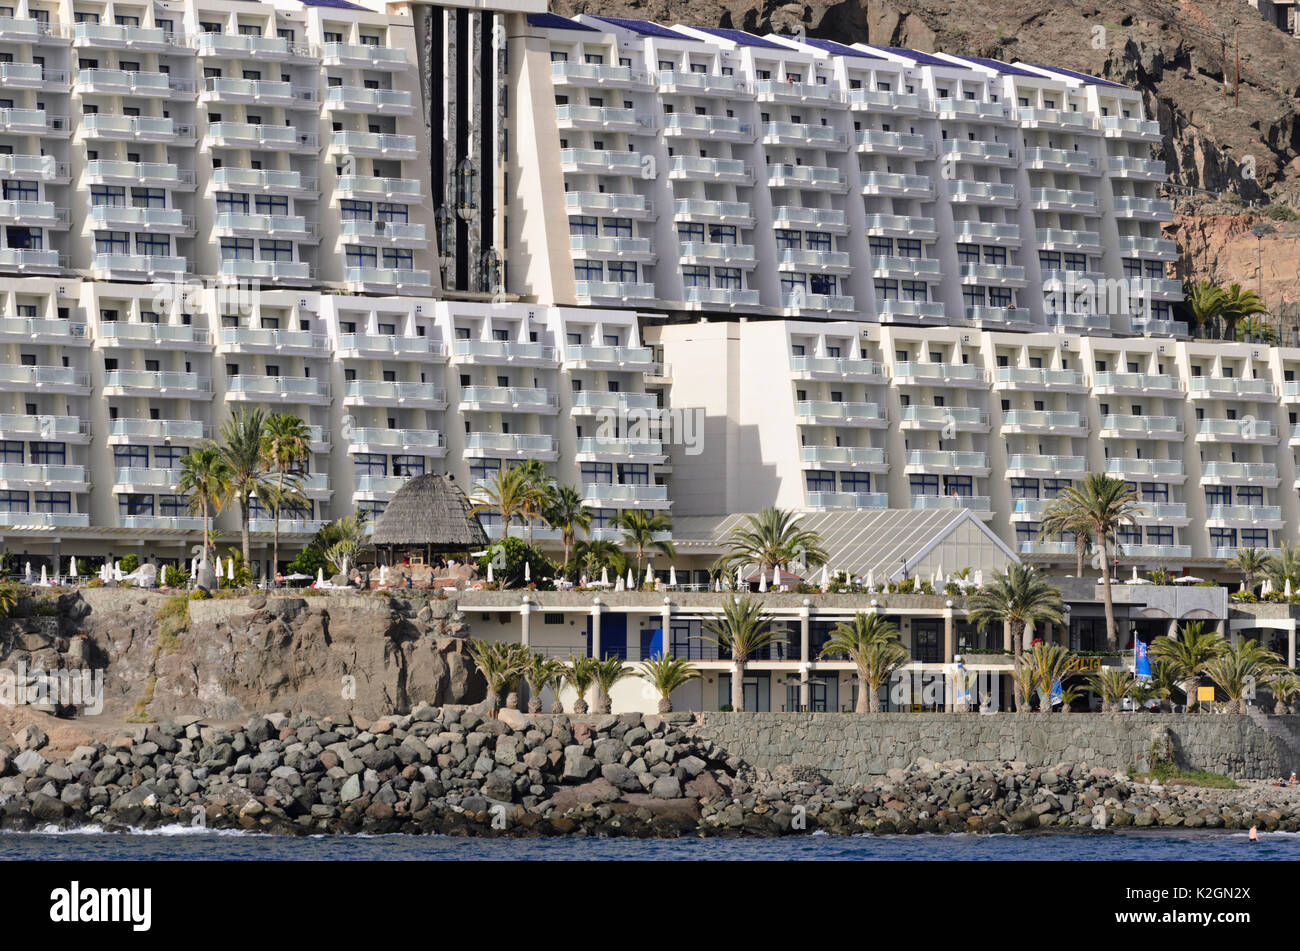 Hanglage mit Hotels und Feriendörfer, taurito, Gran Canaria, Spanien Stockfoto